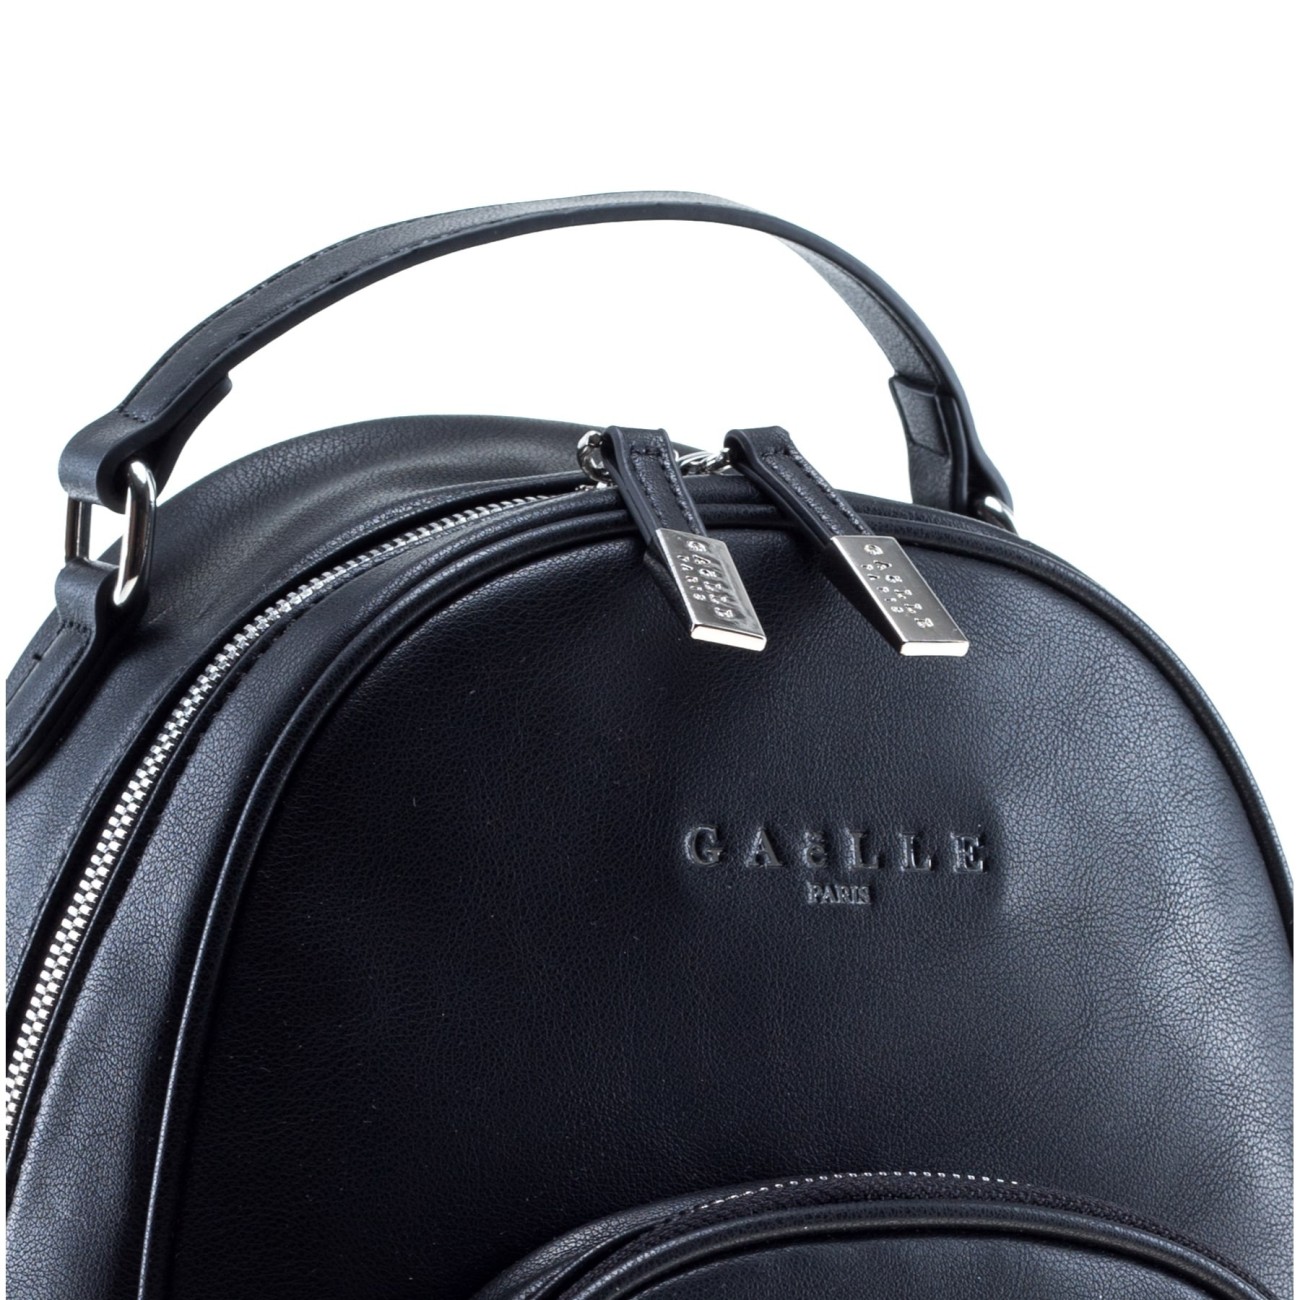 Gaelle women's black backpack